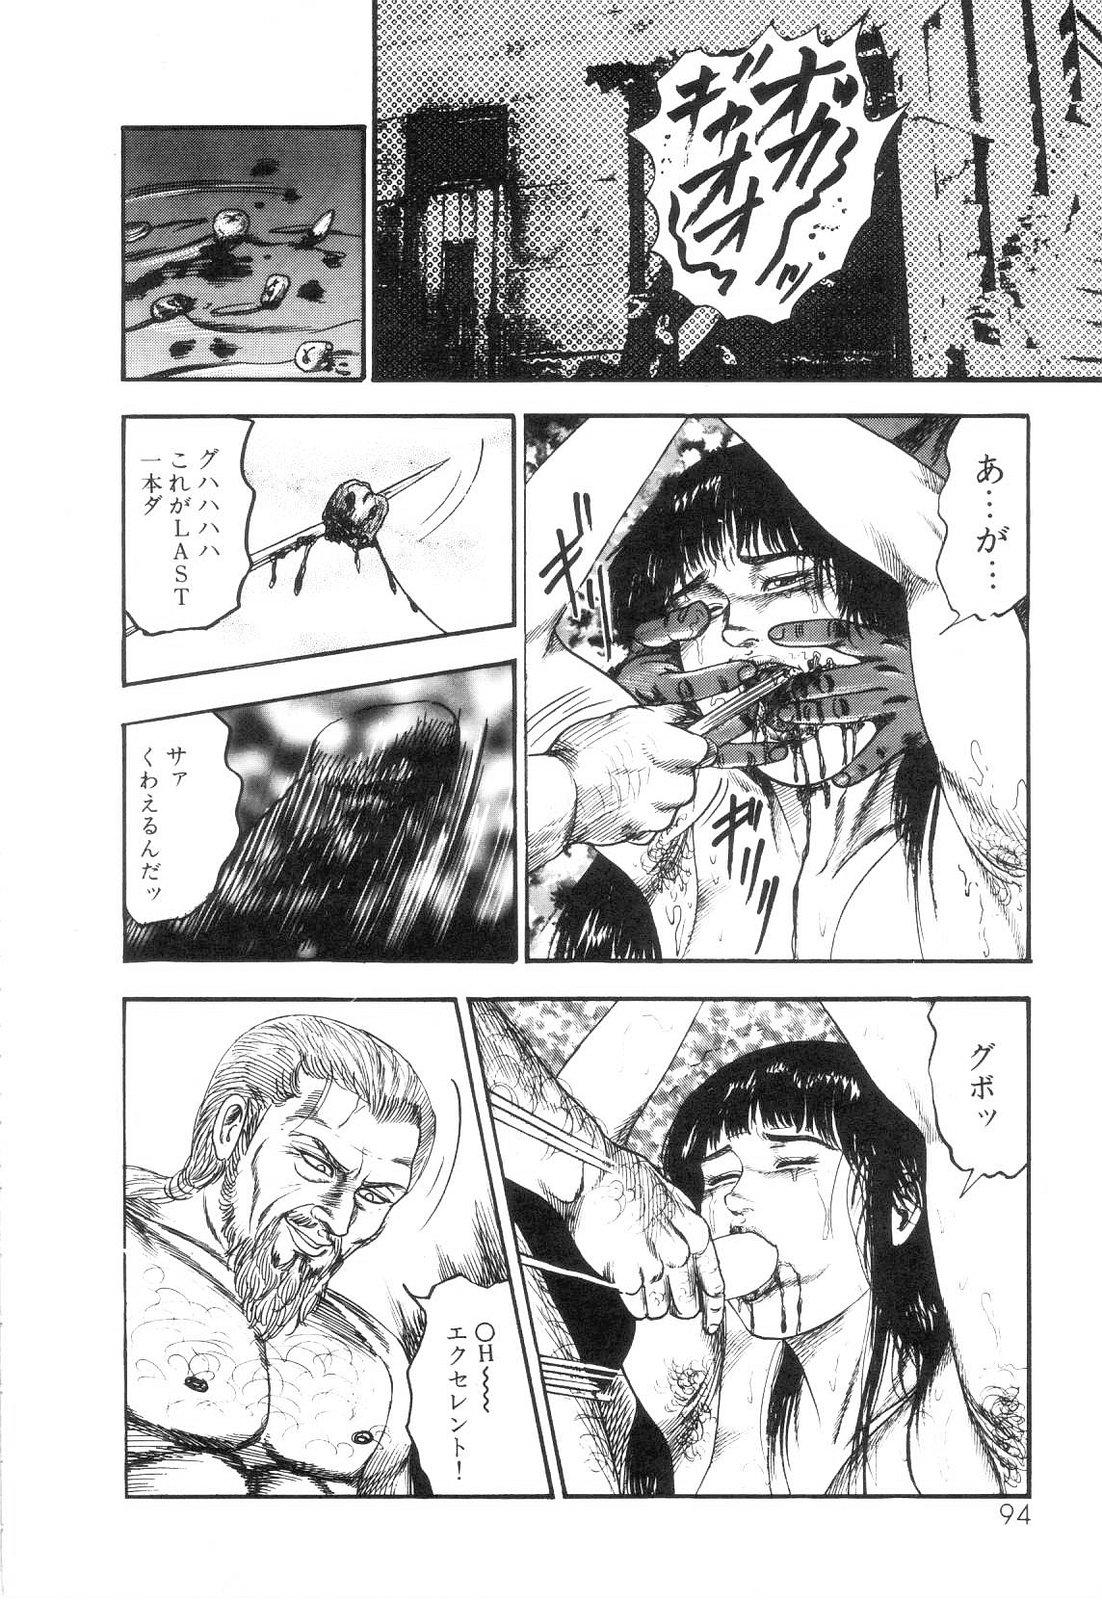 Shiro no Mokushiroku Vol. 6 - Juuai Erika no Shou 95